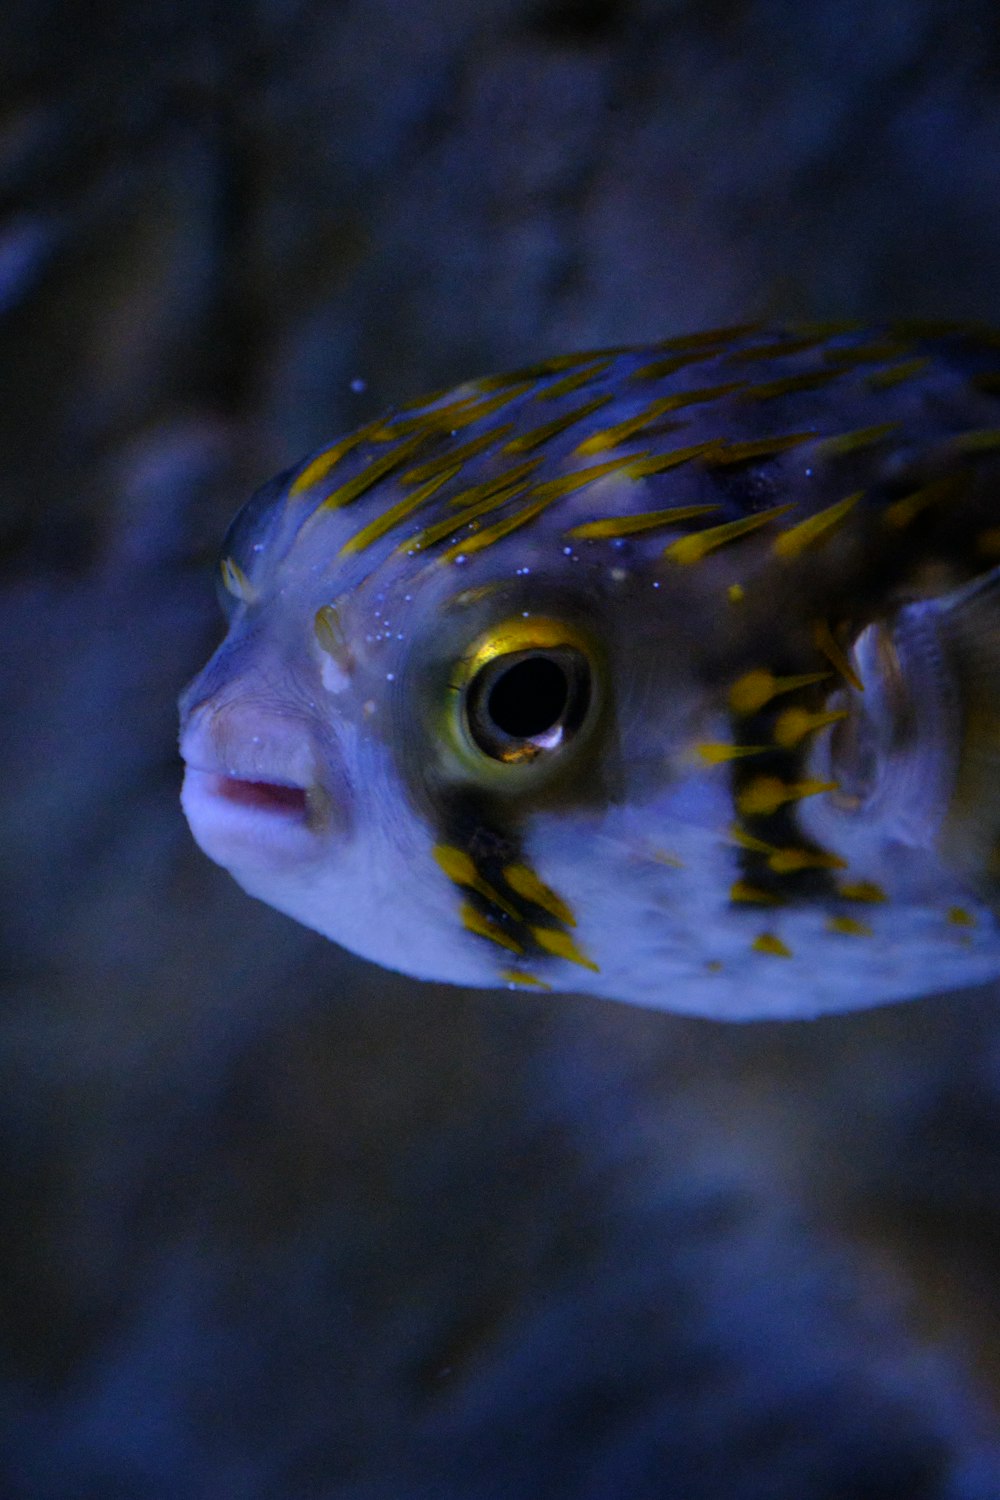 Un pez con una cola rayada amarilla y azul